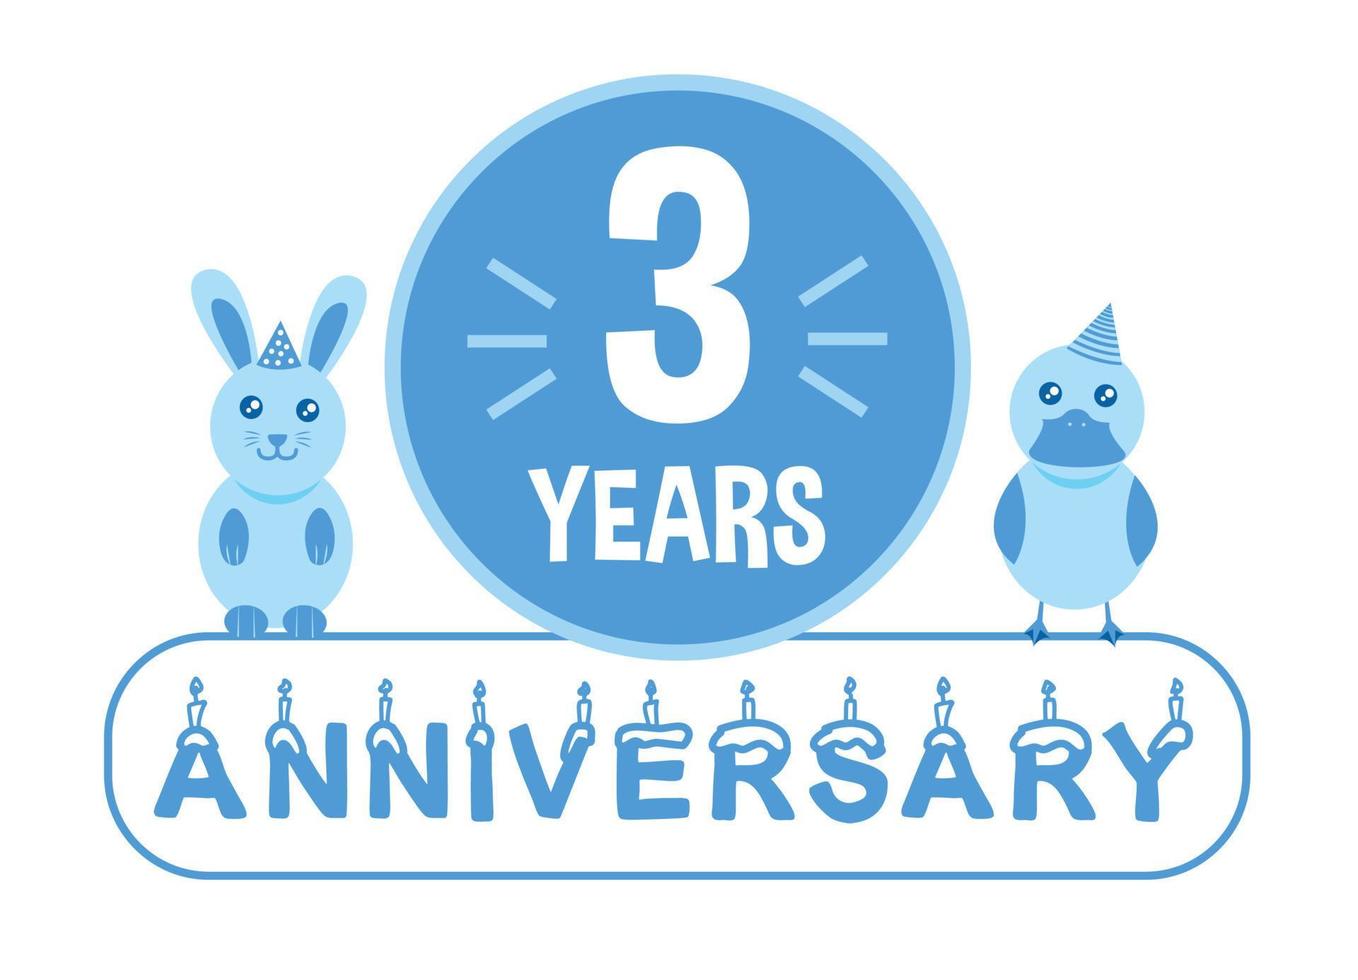 3:e födelsedag. tre år årsdag firande baner med blå djur tema för ungar. vektor